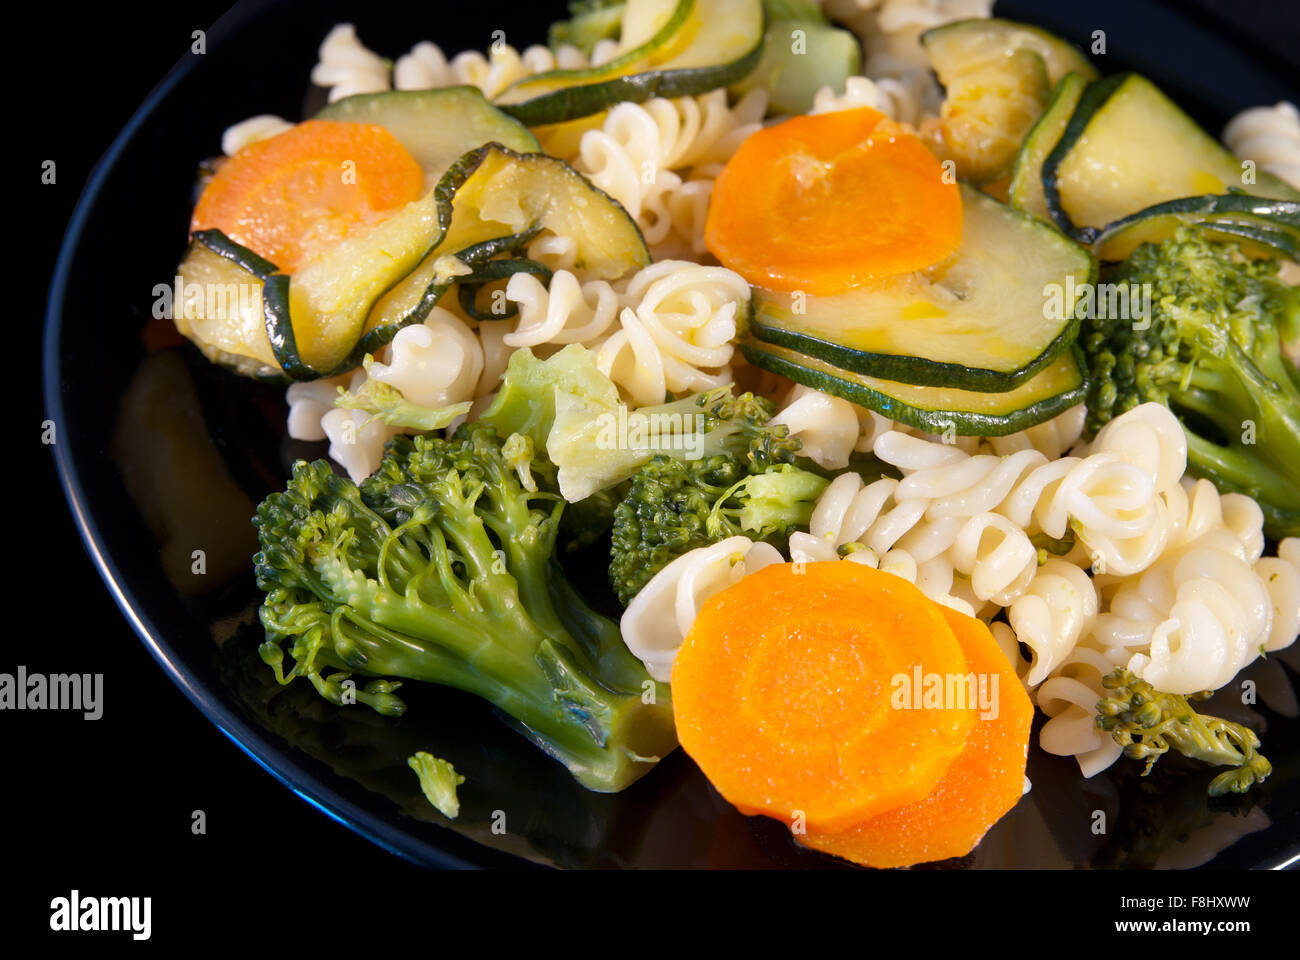 Italian pasta girandole with broccoli, zucchini and carrot Stock Photo